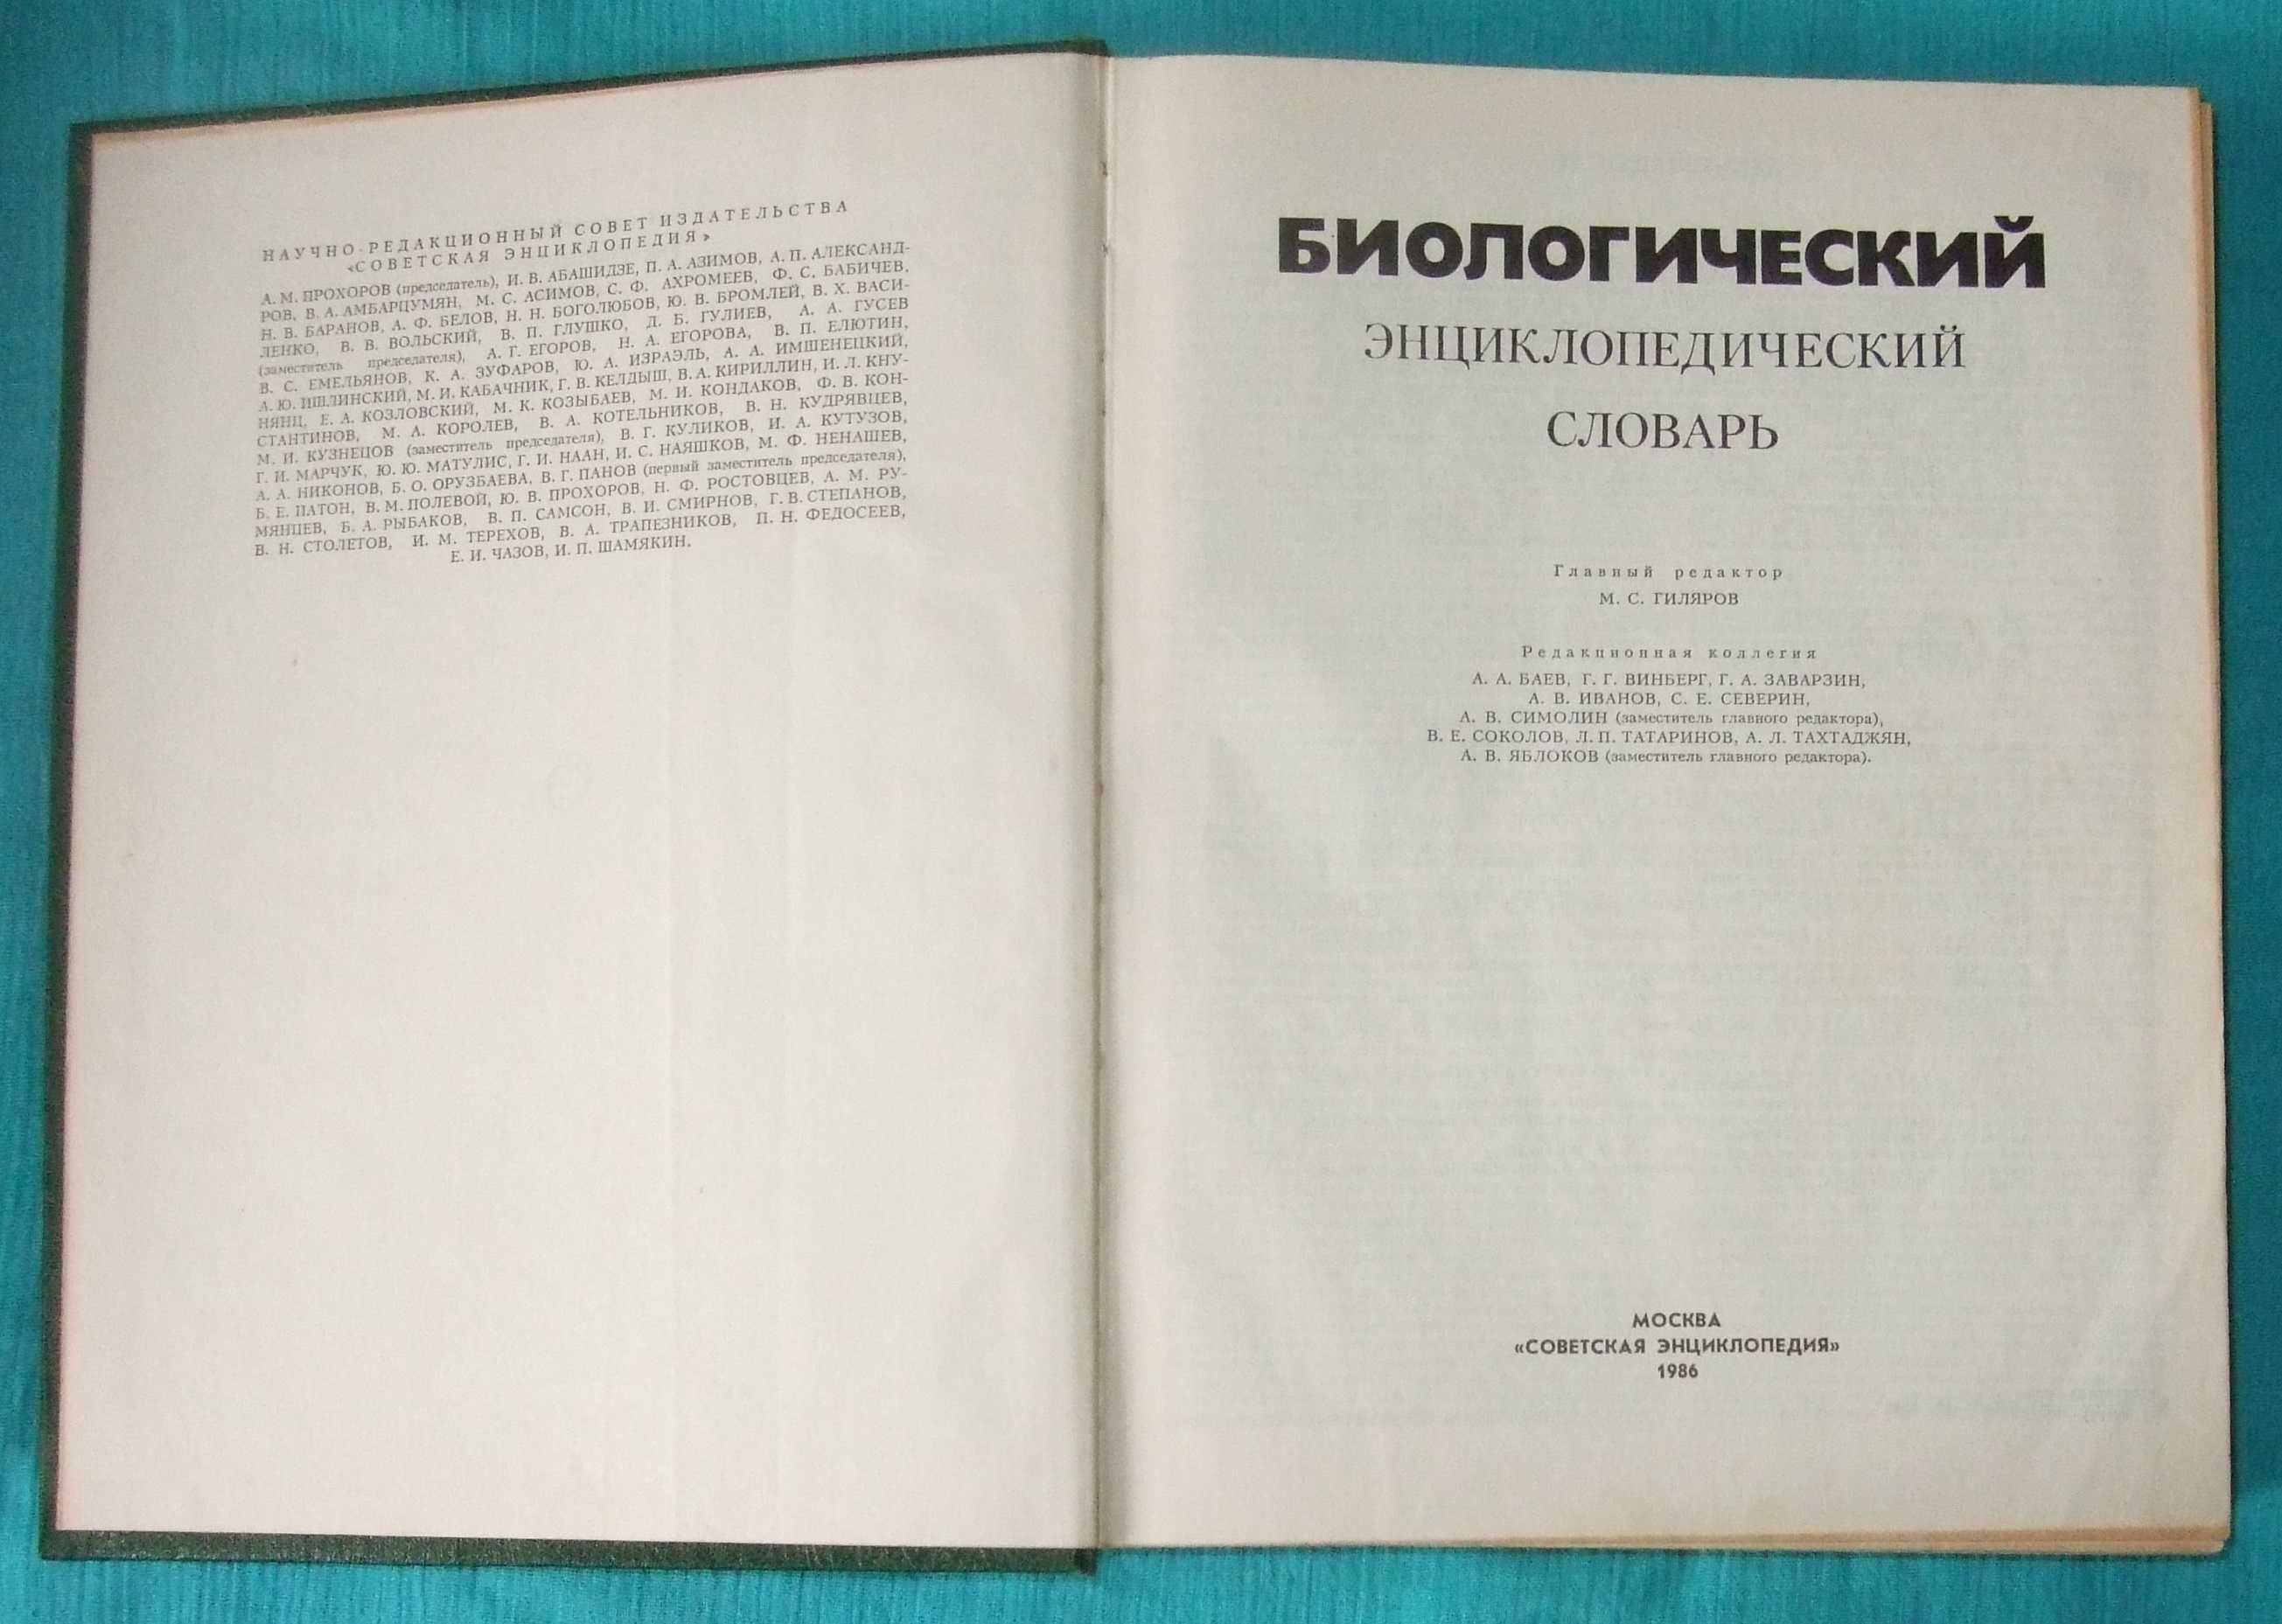 Биологический энциклопедический словарь (1986 г.)